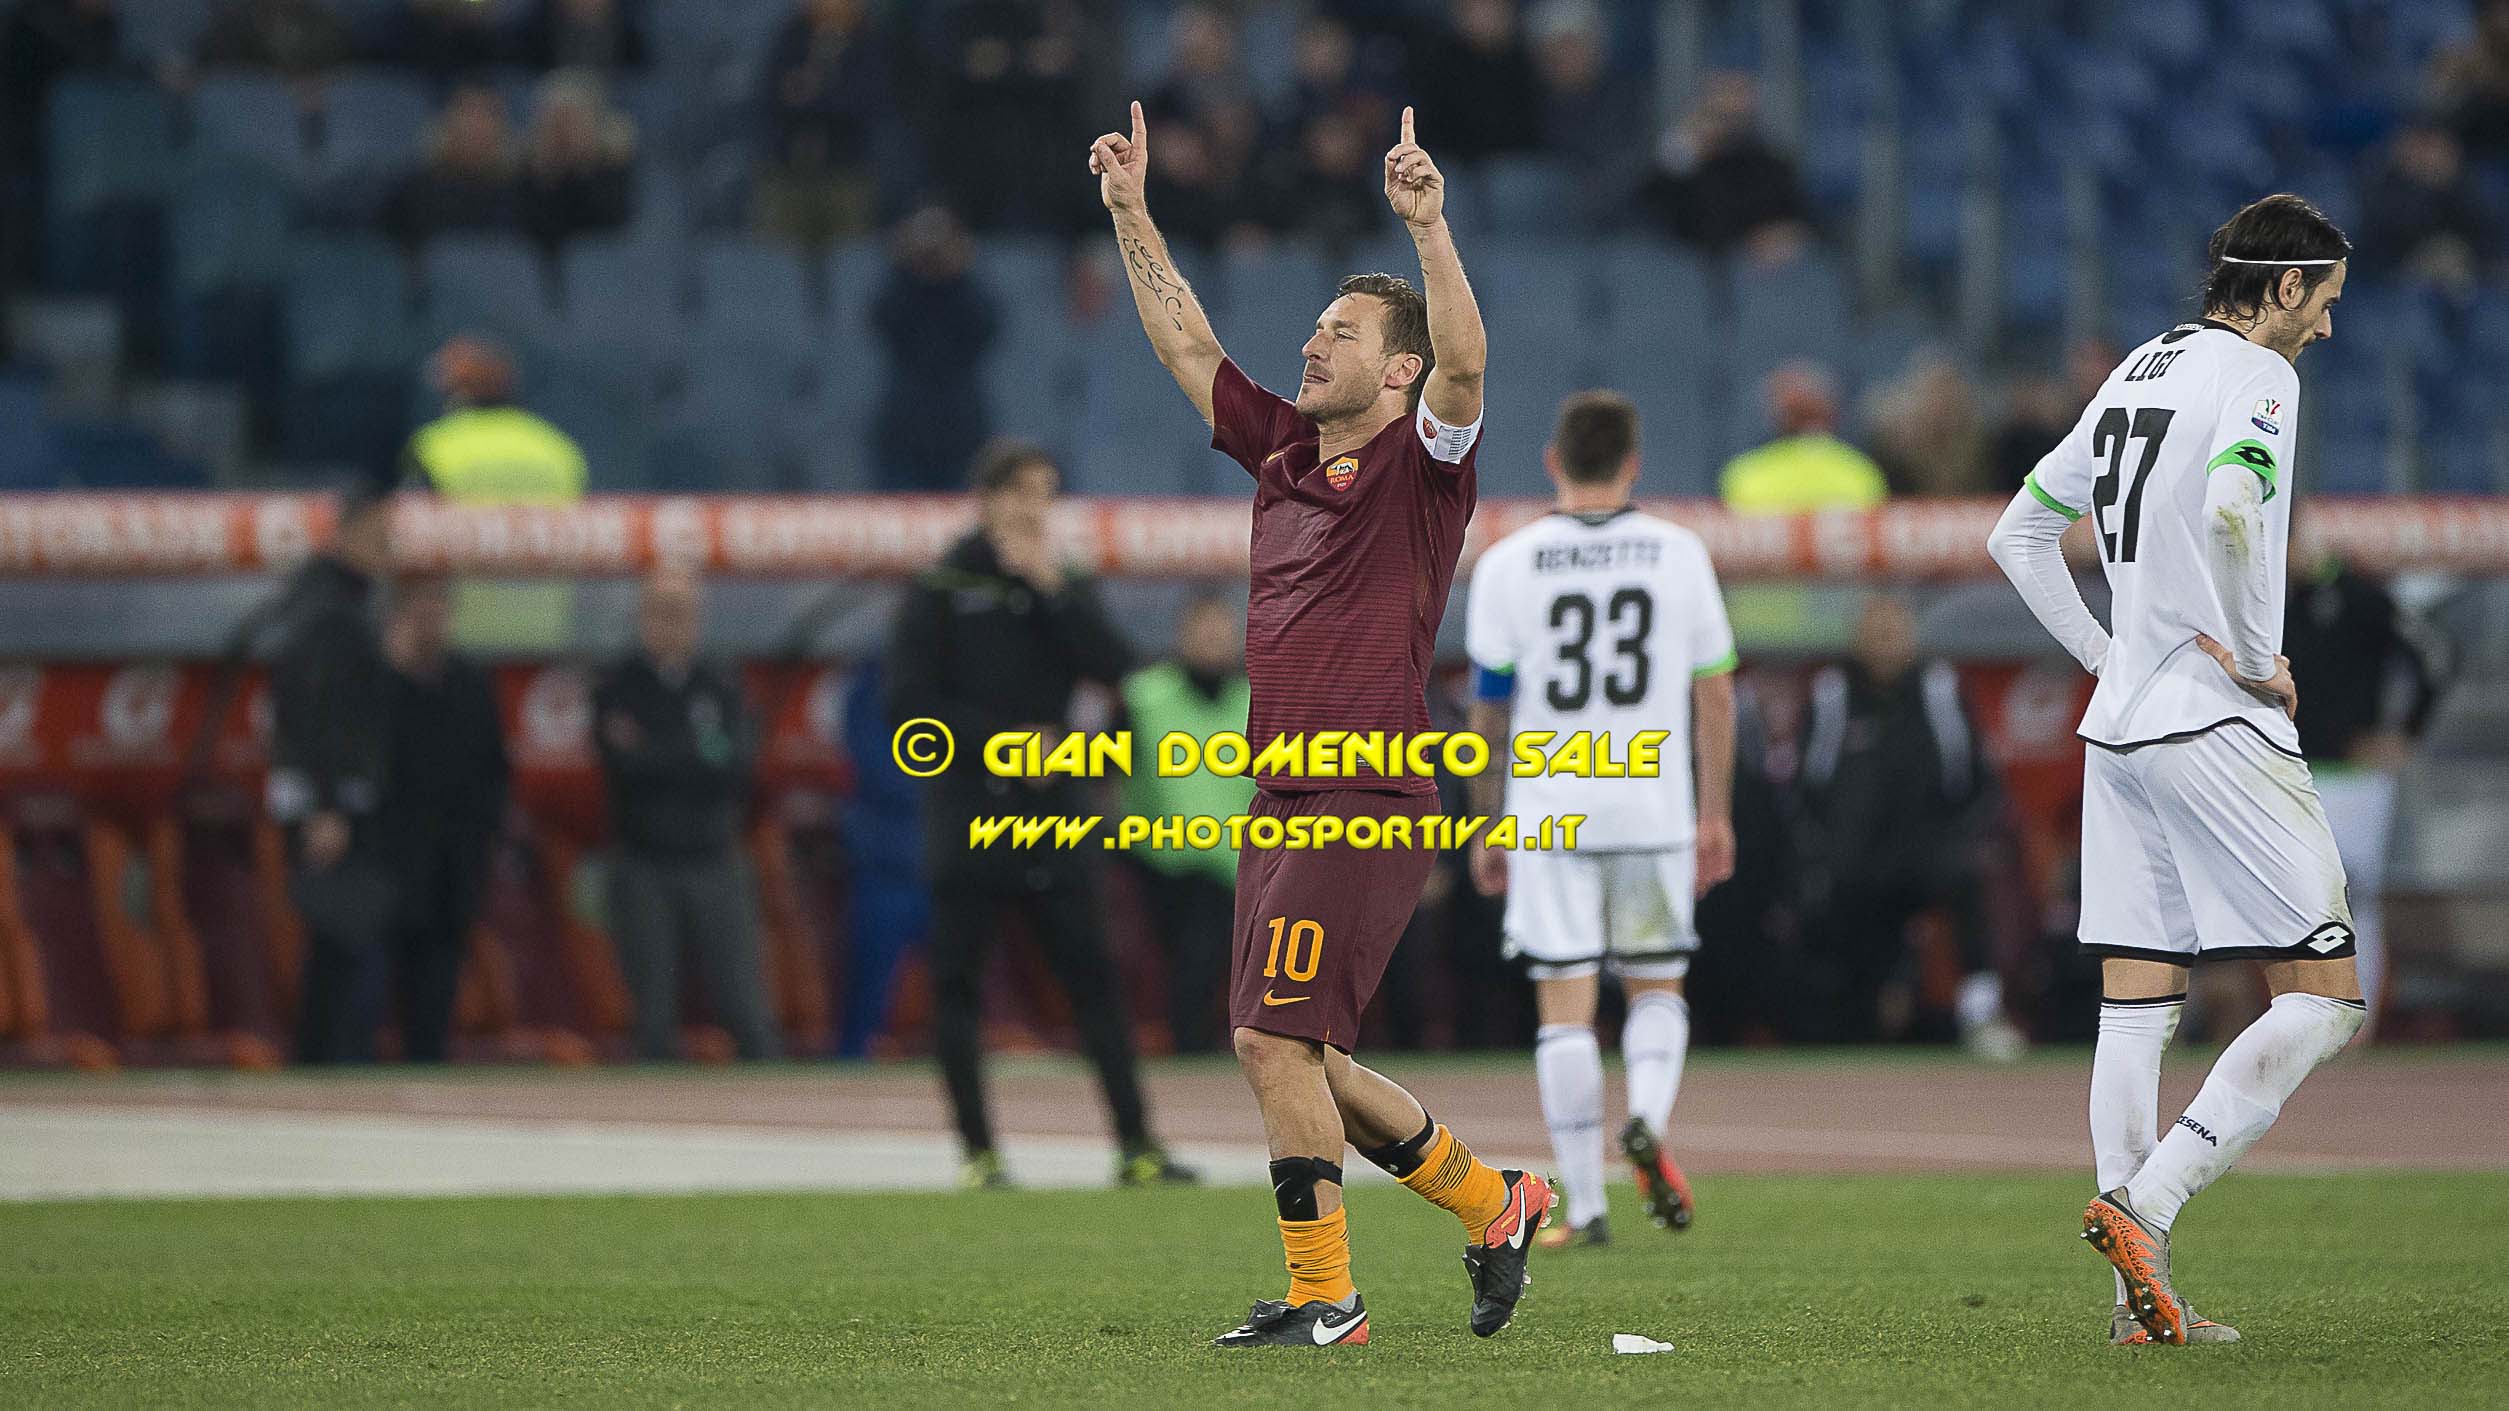 Coppa Italia, è Totti a salvare la Roma grazie al gol allo scadere contro il Cesena